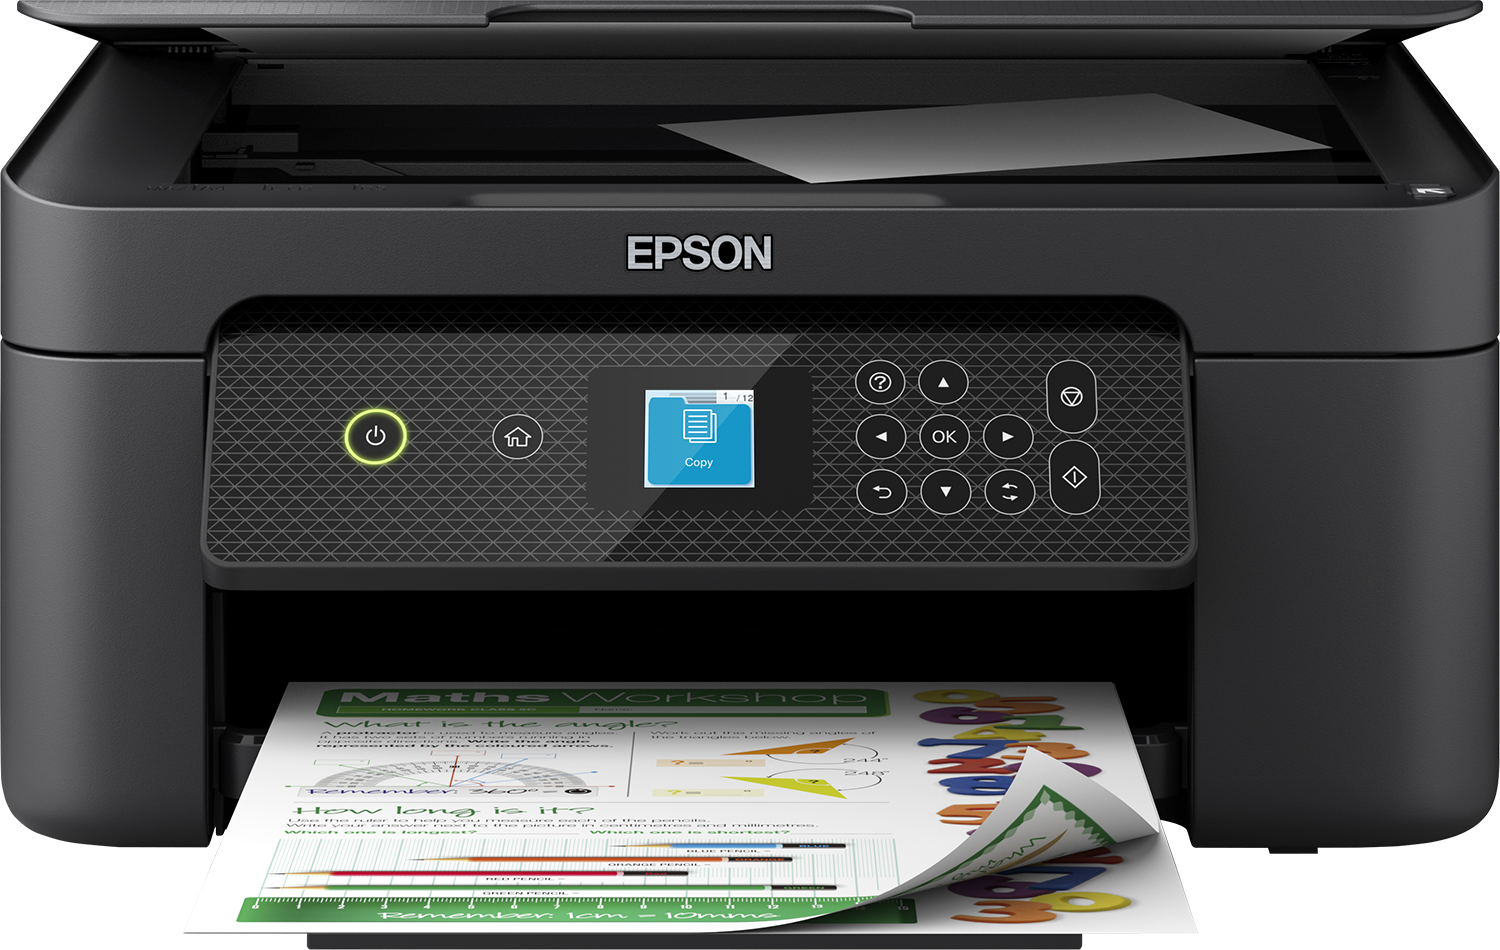 Impresora Epson Expression Home XP-2200 Sistema Continuo Sublimación